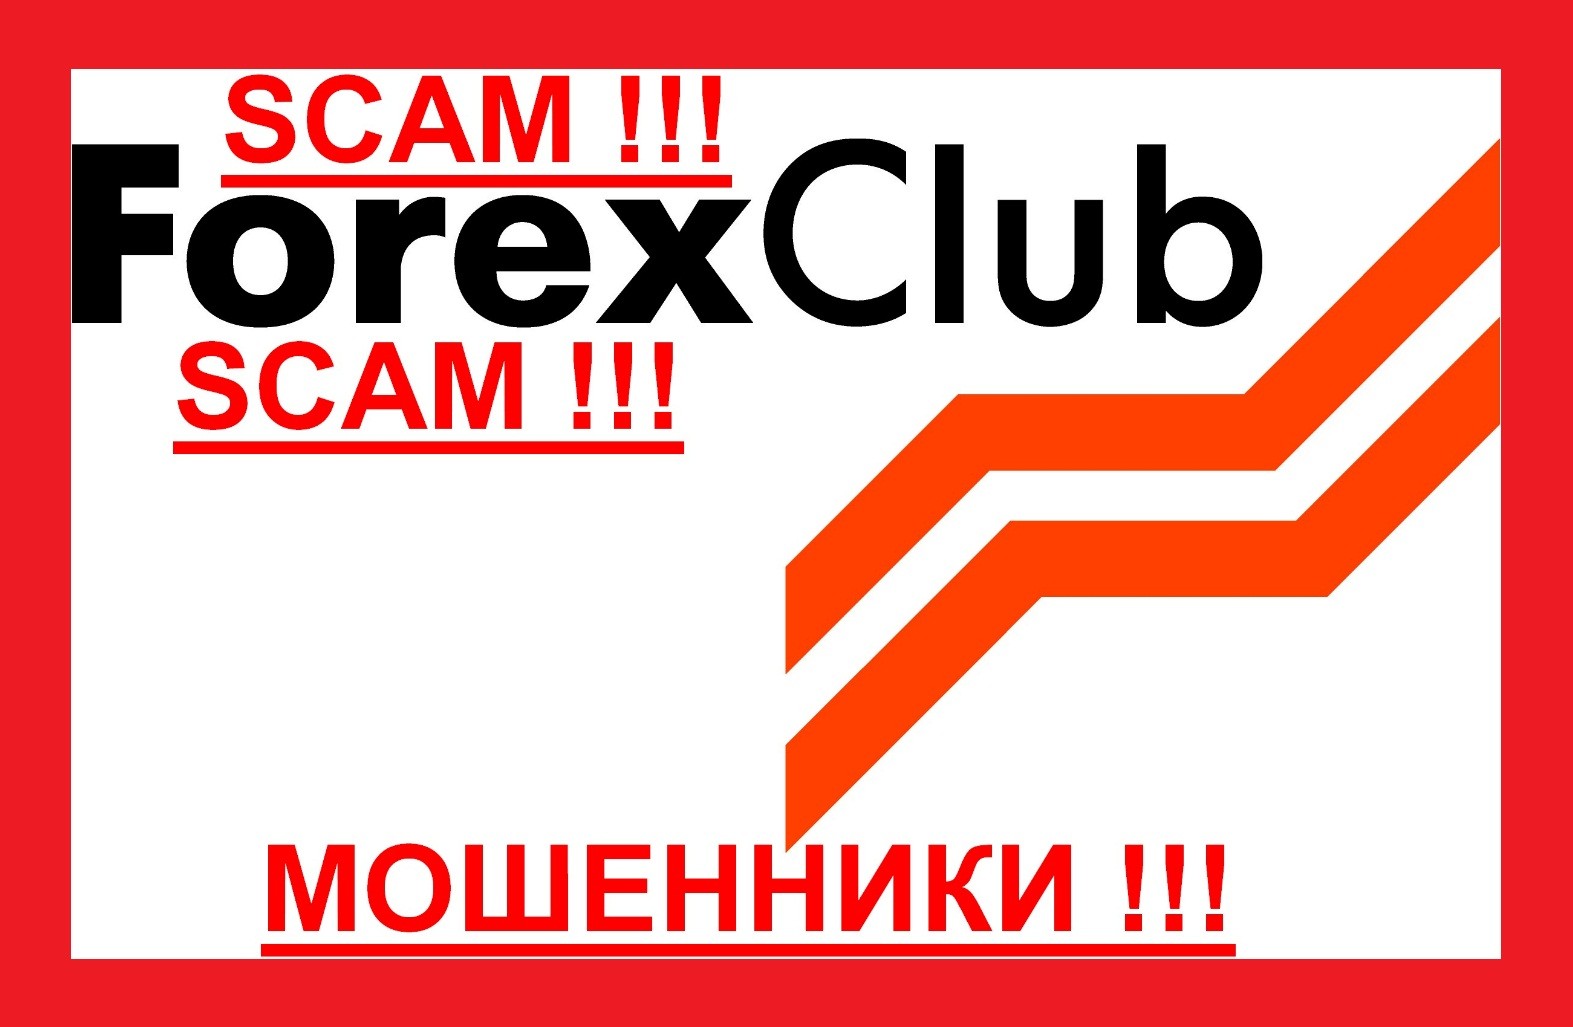 aci forex club financial